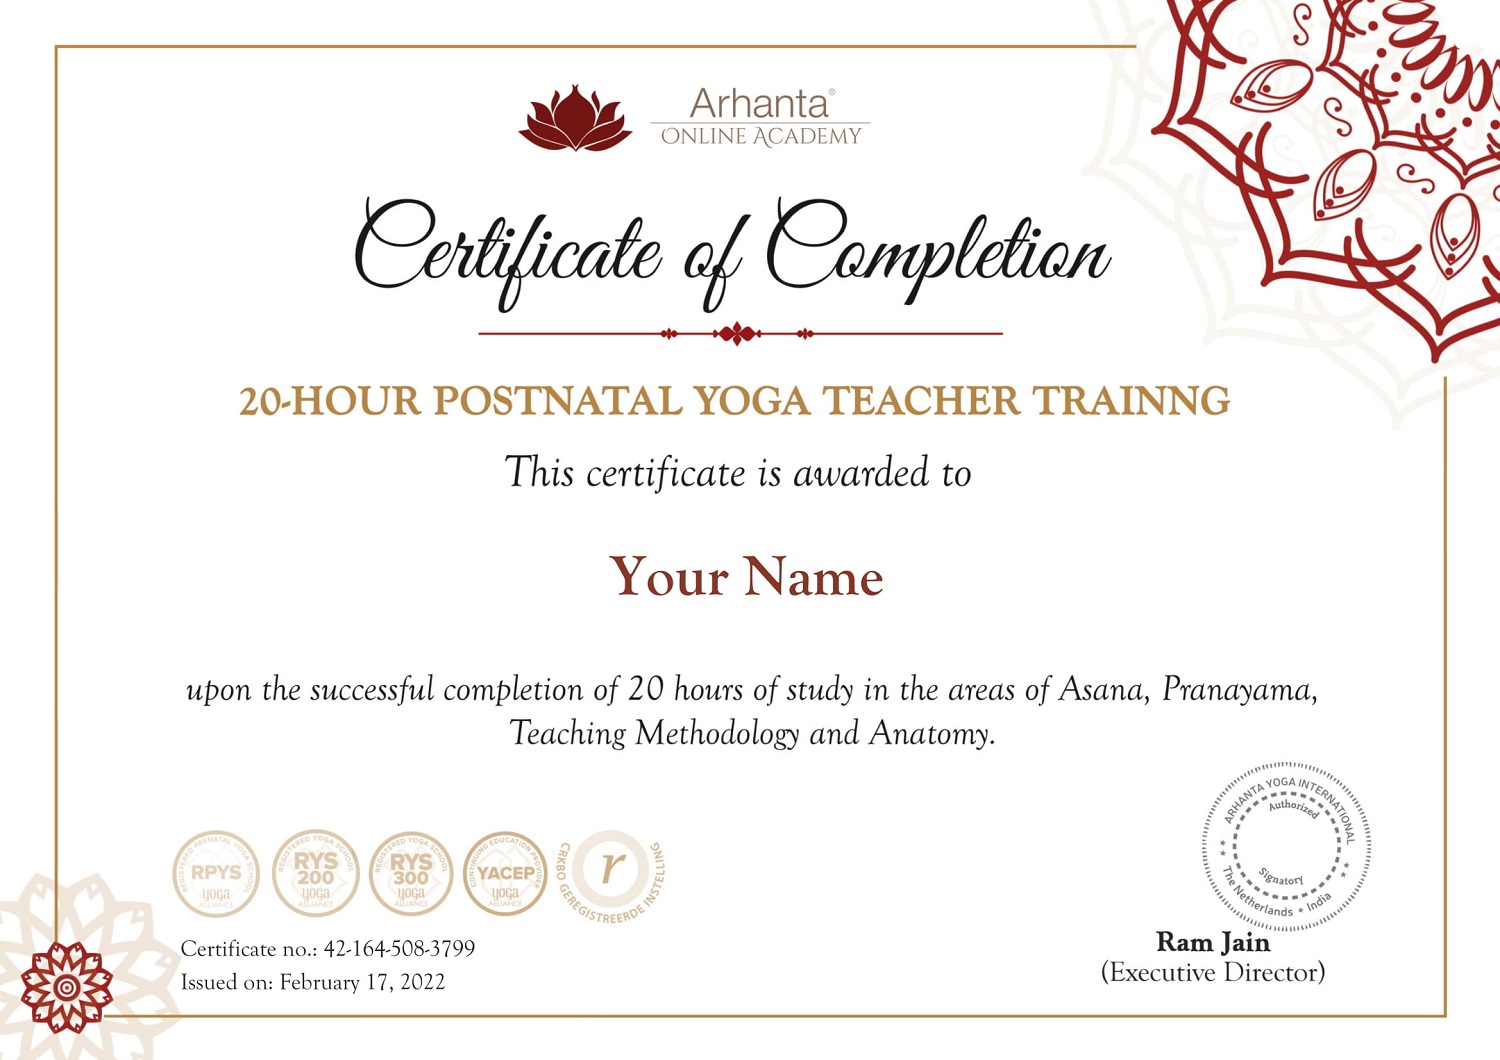 Certificado de formación de profesores de yoga postnatal de 20 horas en línea